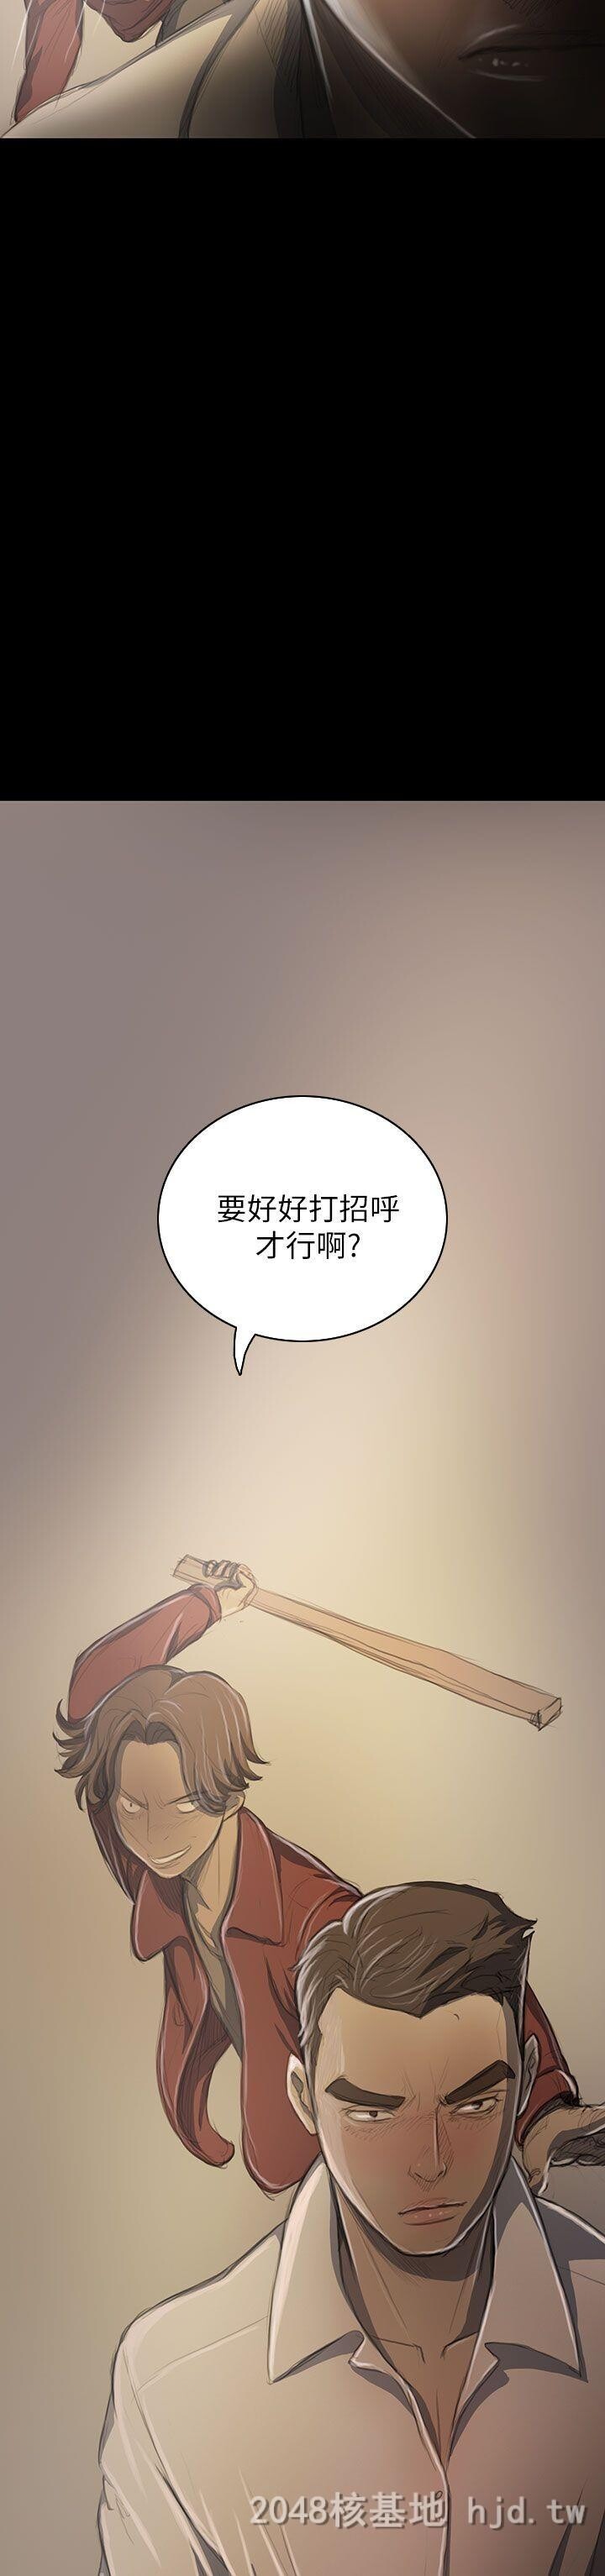 [中文]姐姐-莲19-20第0页 作者:Publisher 帖子ID:257764 TAG:动漫图片,卡通漫畫,2048核基地